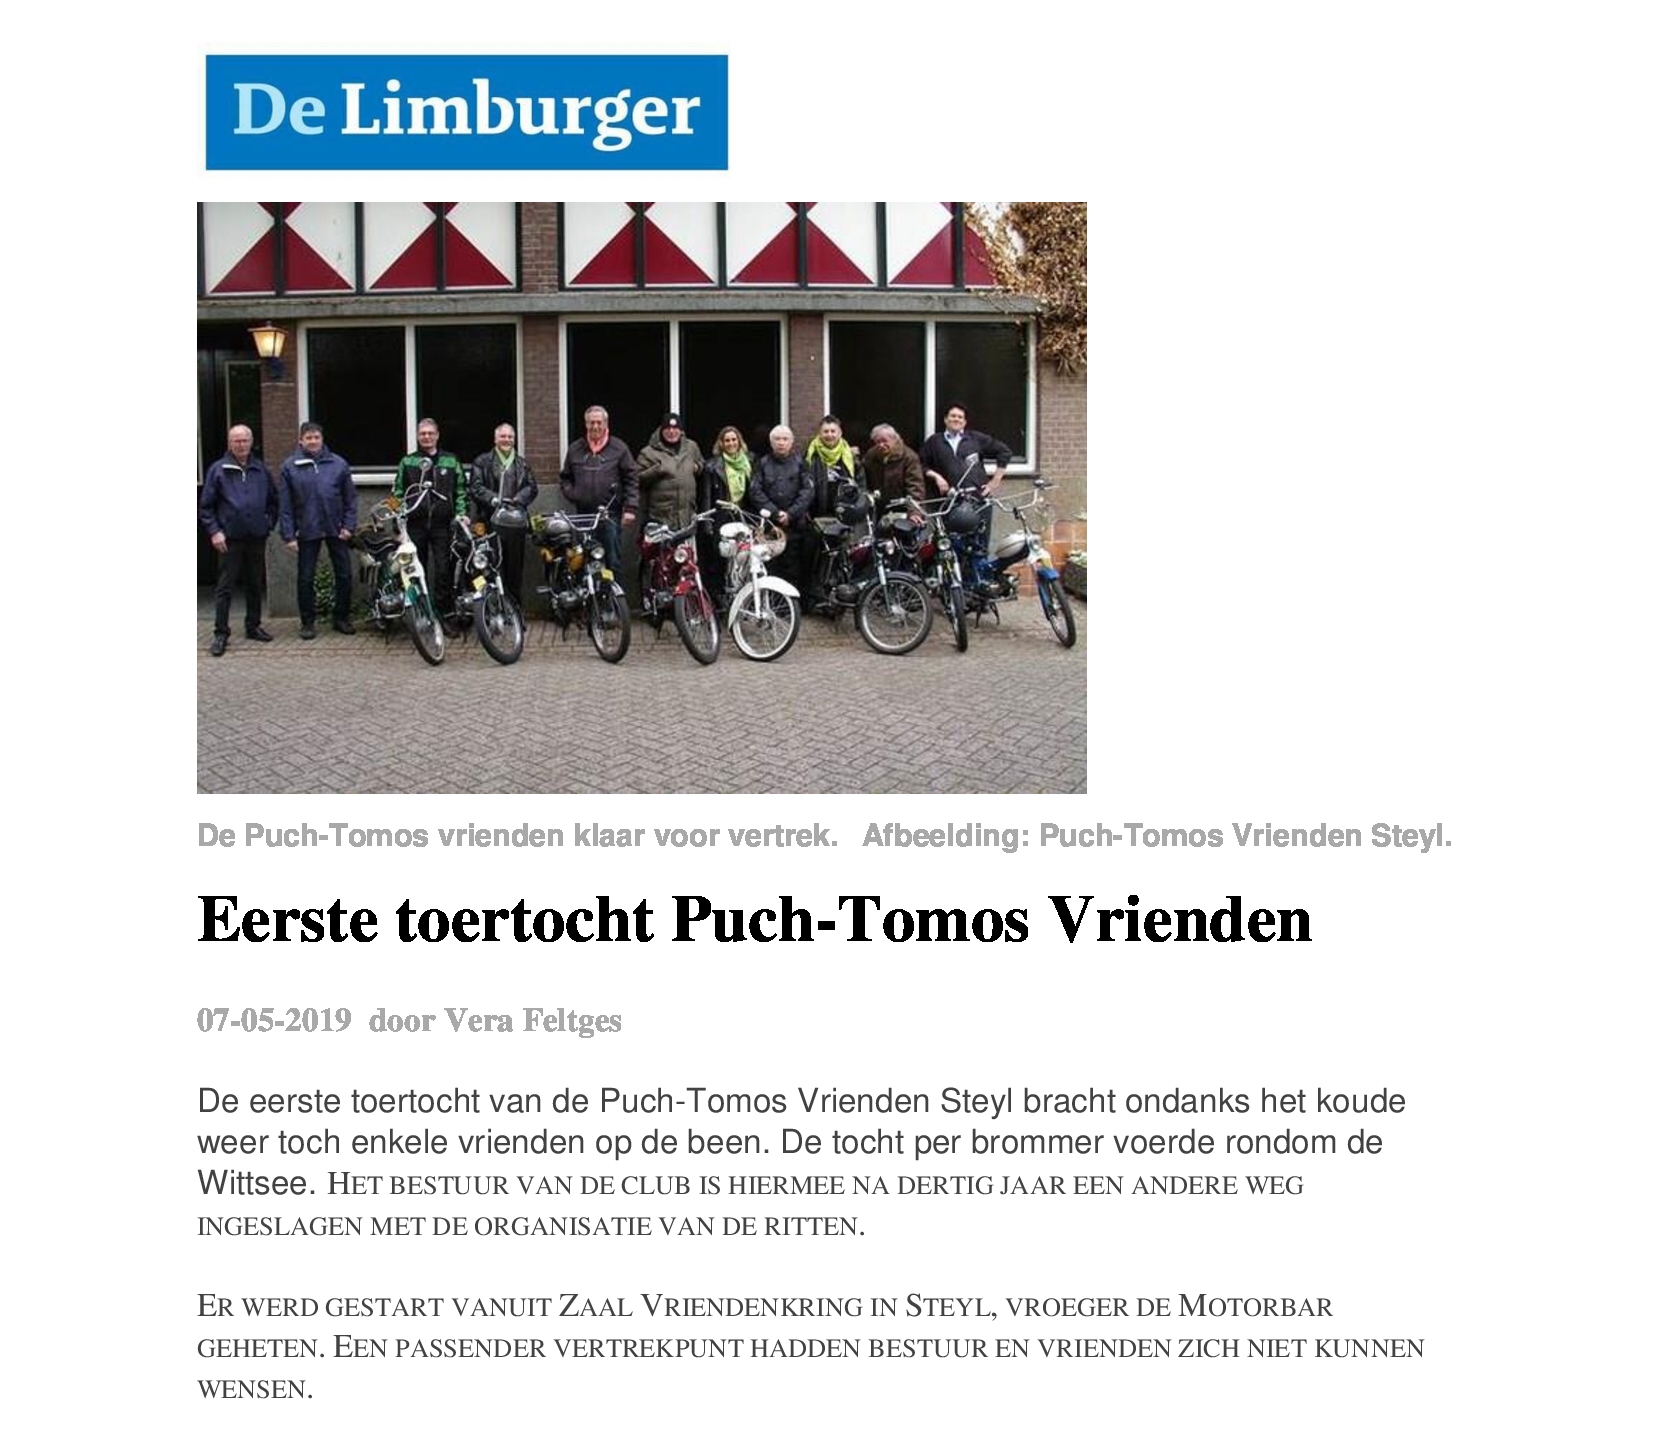 De Limburger 2020 artikeltje